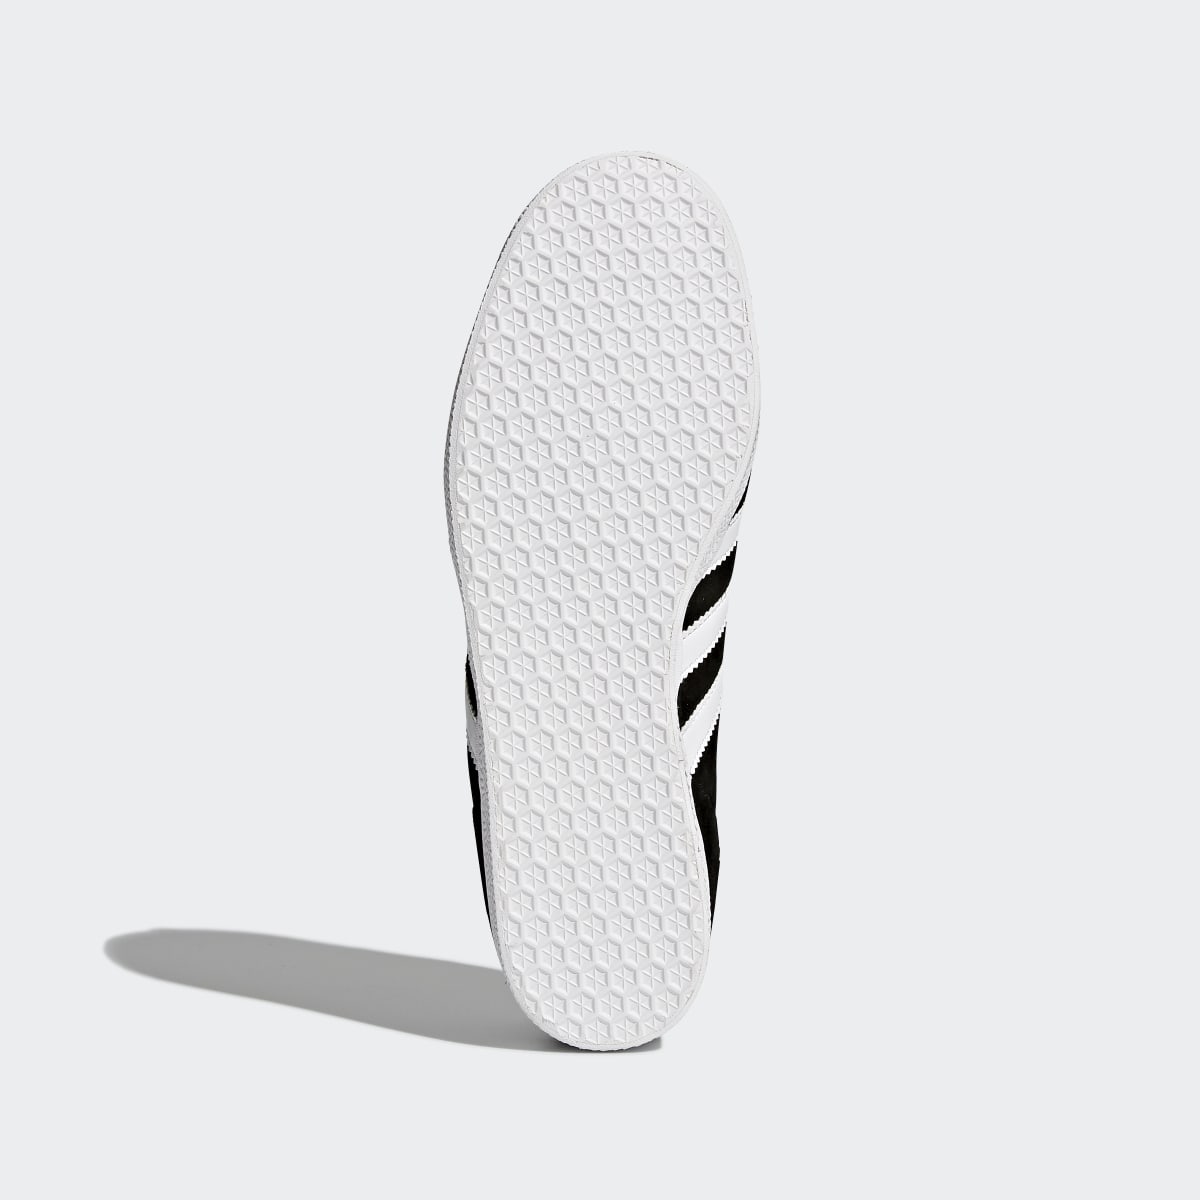 Adidas Gazelle Schuh. 7